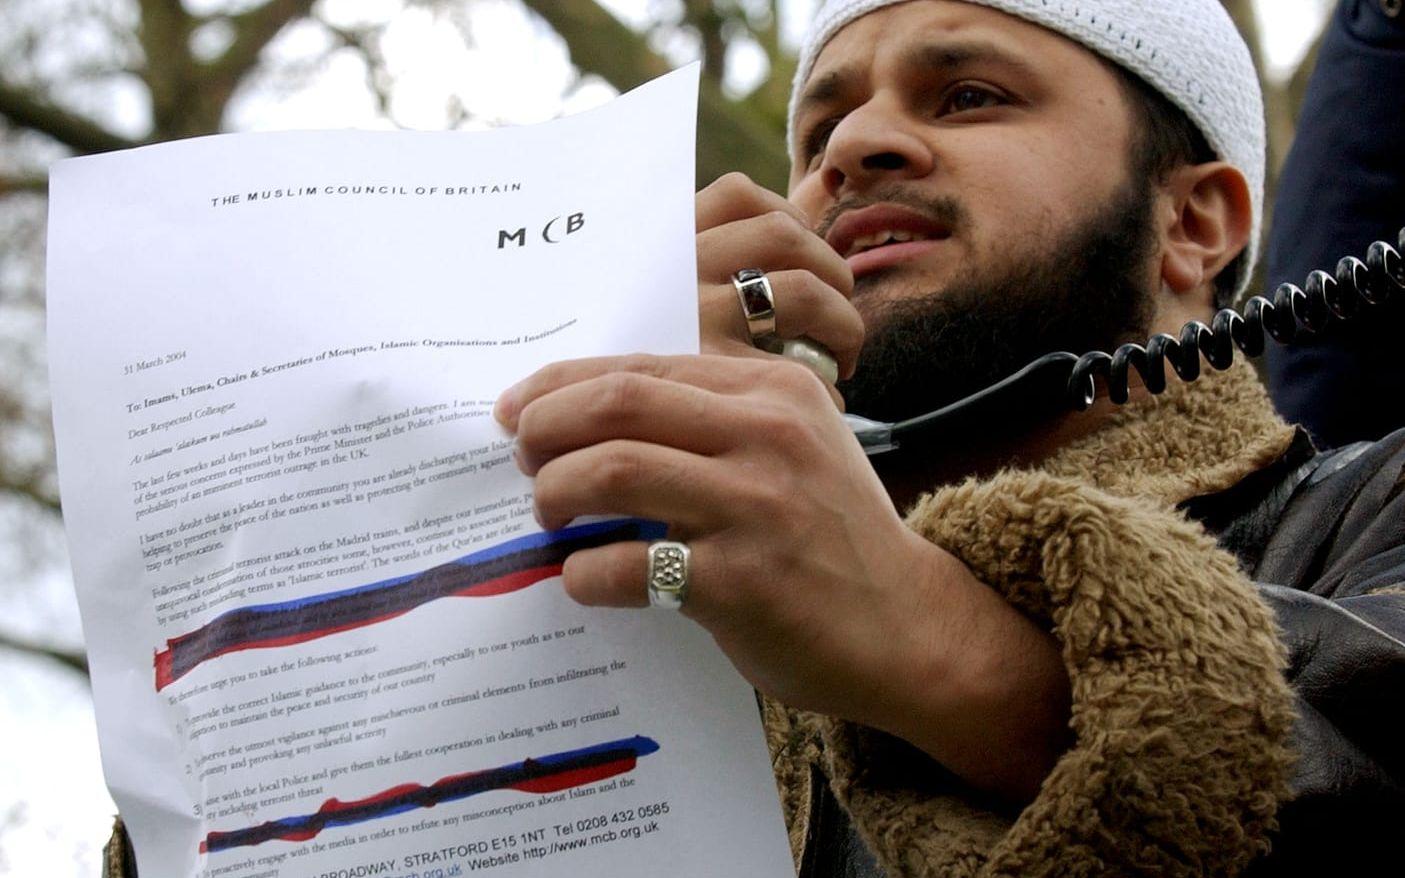 Abdul Rehman från den muslimska gruppen Ahl Sunnah protesterar efter att The Muslim Council of Britain gått ut med ett brev om samarbete med polisen, 2004.